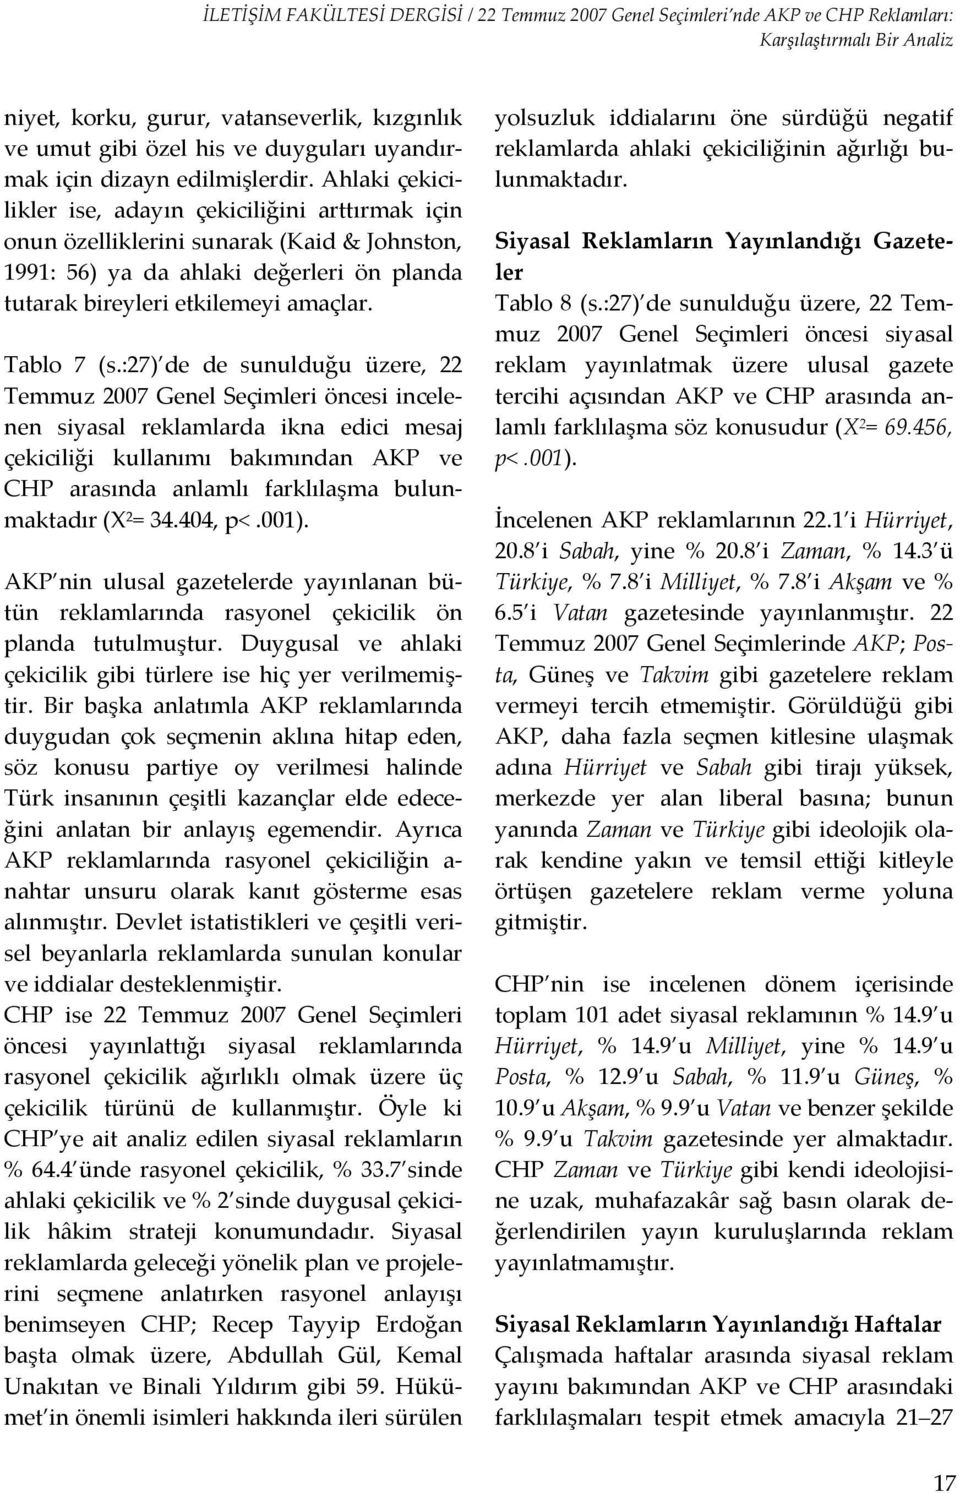 :27) de de sunulduğu üzere, 22 Temmuz 2007 Genel Seçimleri öncesi incelenen siyasal reklamlarda ikna edici mesaj çekiciliği kullanımı bakımından AKP ve CHP arasında anlamlı farklılaşma bulunmaktadır